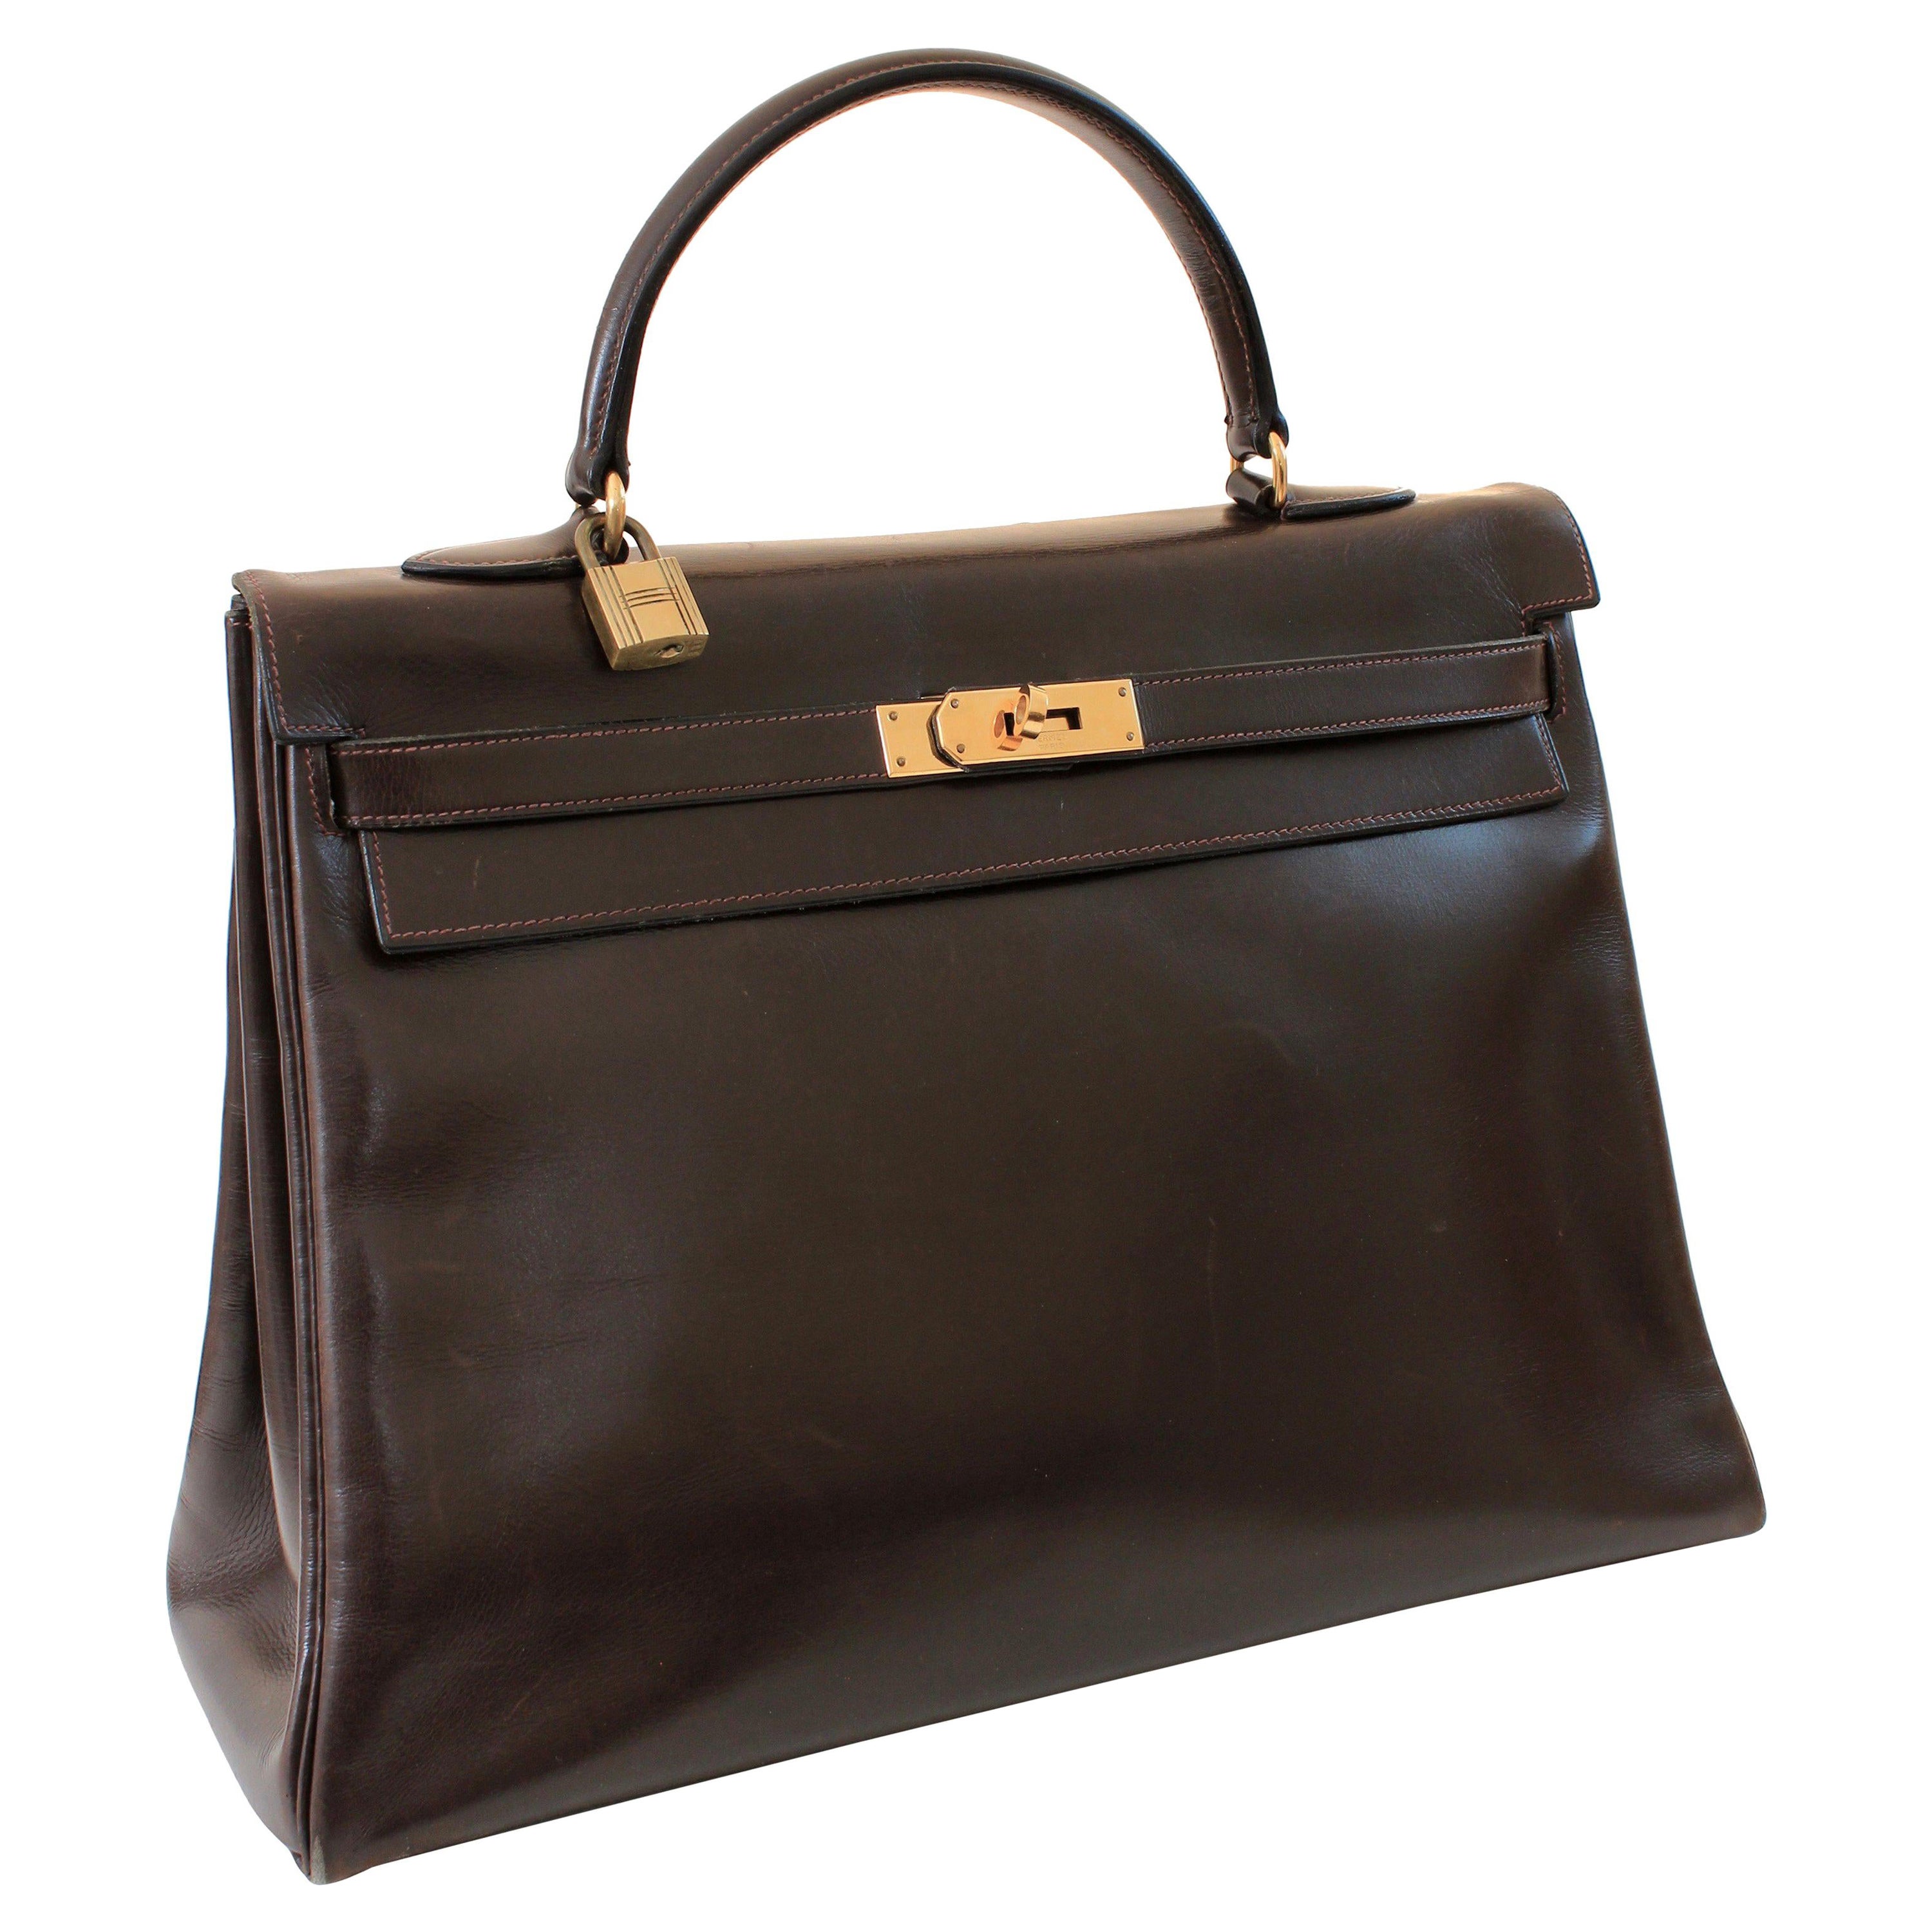 Ce fabuleux sac à main a été fabriqué par Hermès en 1945.  Appelée à l'origine Sac a Depeches, cette pièce a été fabriquée environ 12 ans avant que Grace Kelly ne porte le modèle que nous connaissons aujourd'hui sous le nom de sac Kelly.  

Réalisé